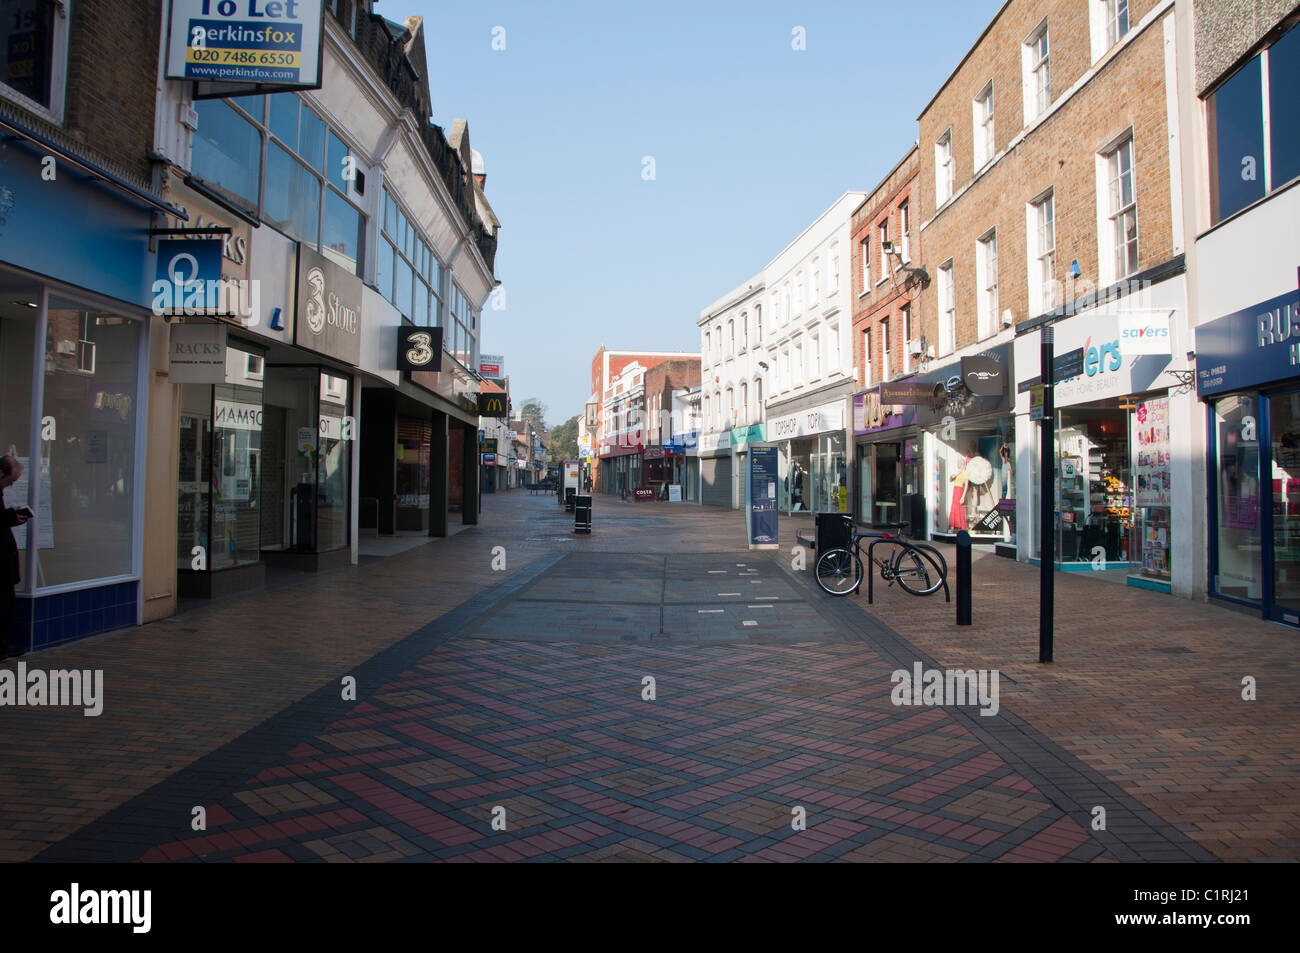 Maidenhead pedestrianised shopping street. Berkshire. UK Stock Photo